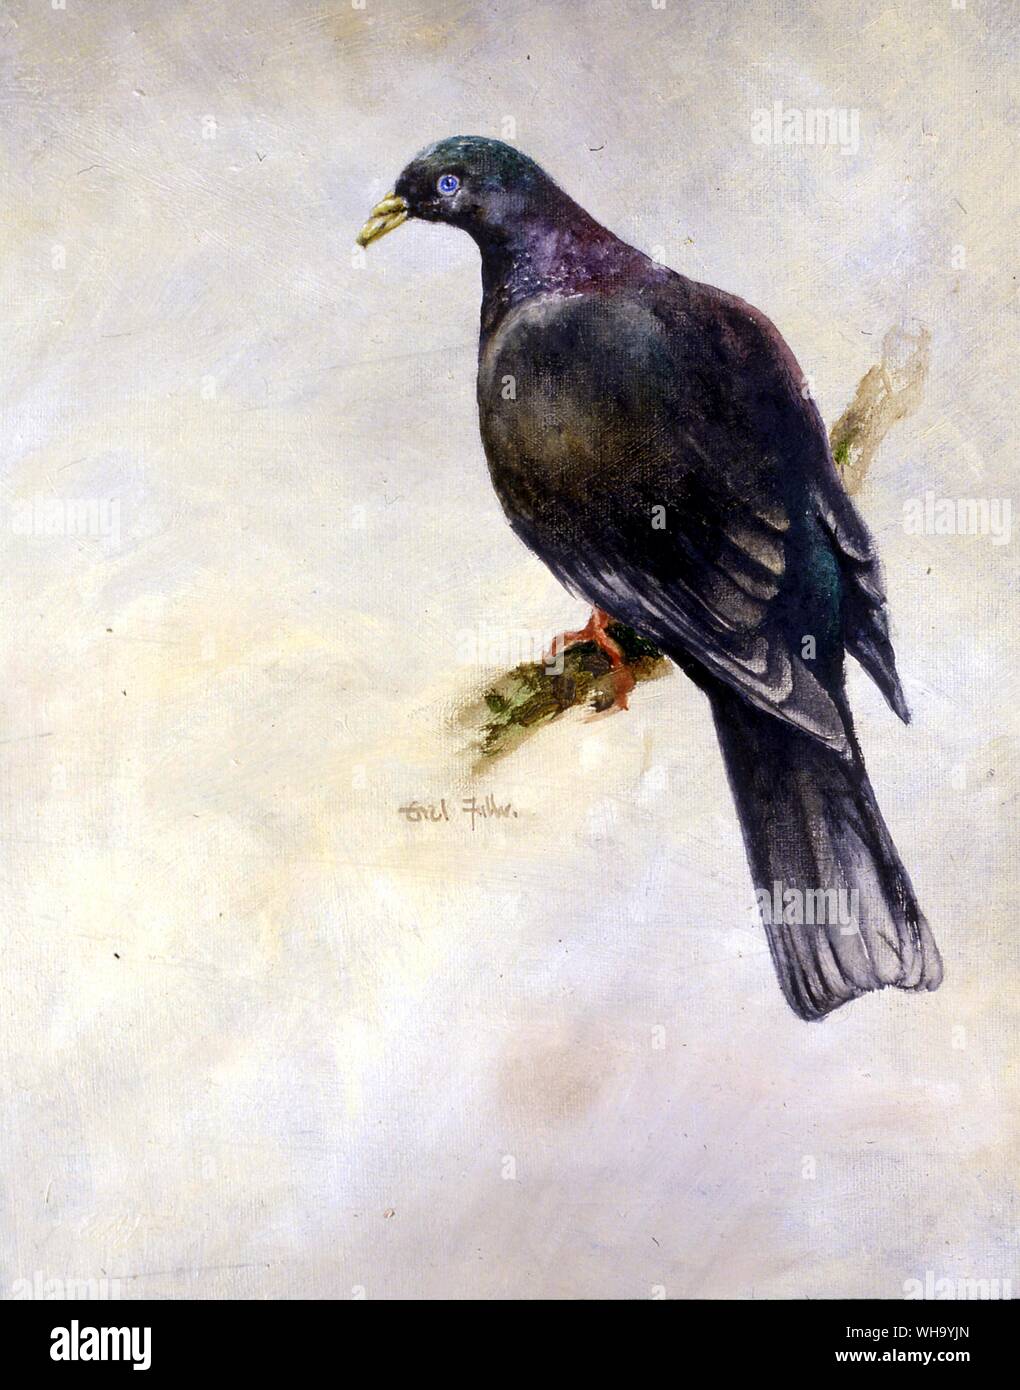 Bonin Pigeon ramier. Peinture à l'huile par Errol Fuller - longueur de 46cm (18in) Banque D'Images